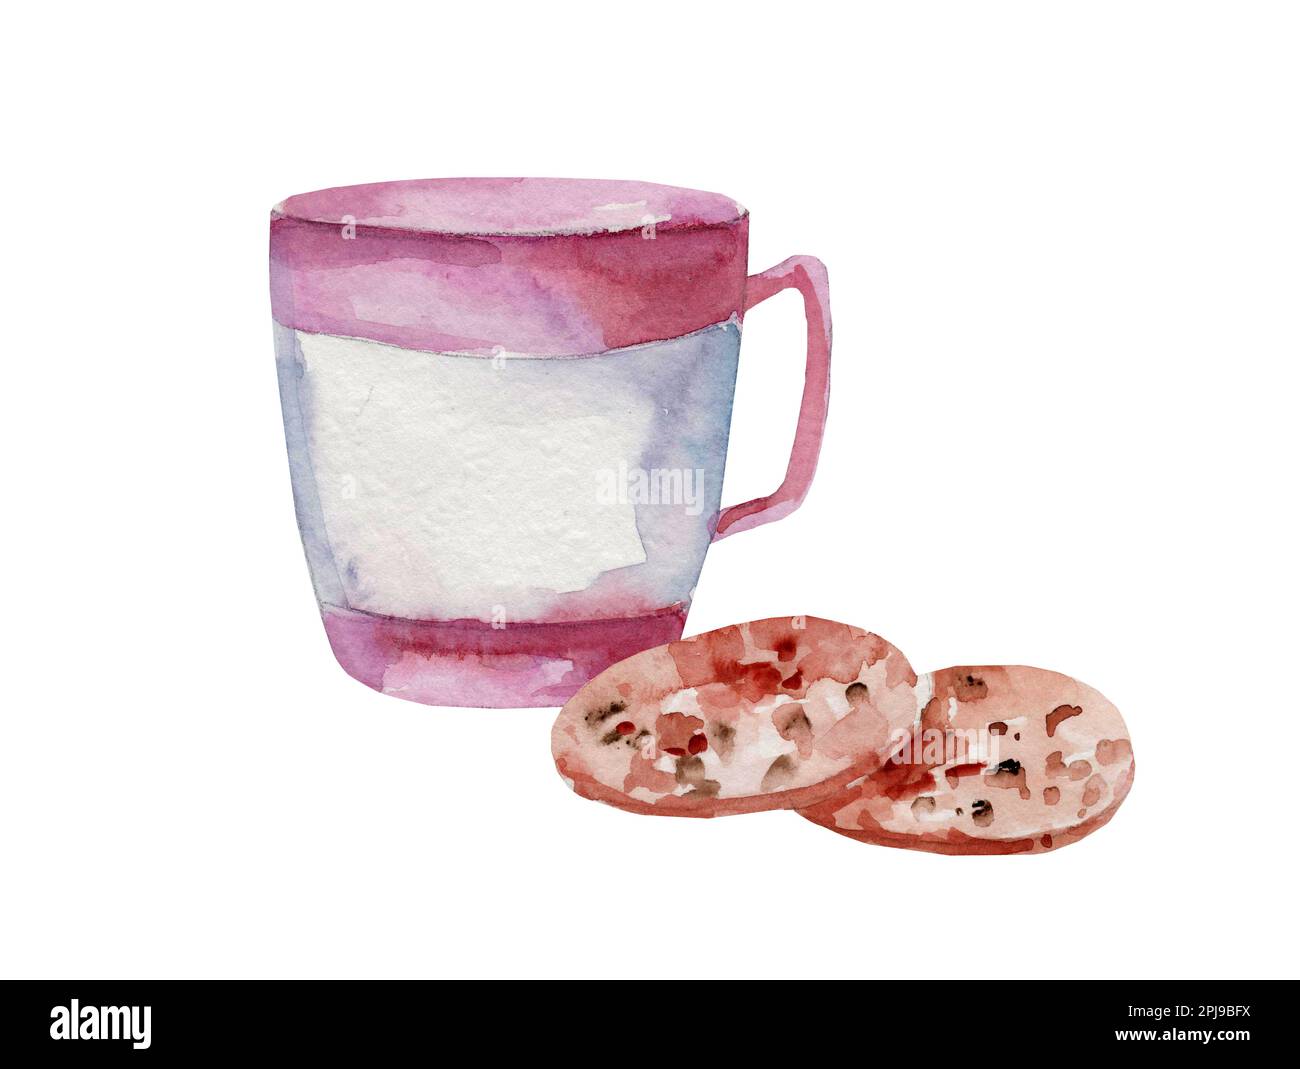 Aquarelle illustration d'une tasse avec thé et biscuits avec des pépites de chocolat sur fond blanc Banque D'Images